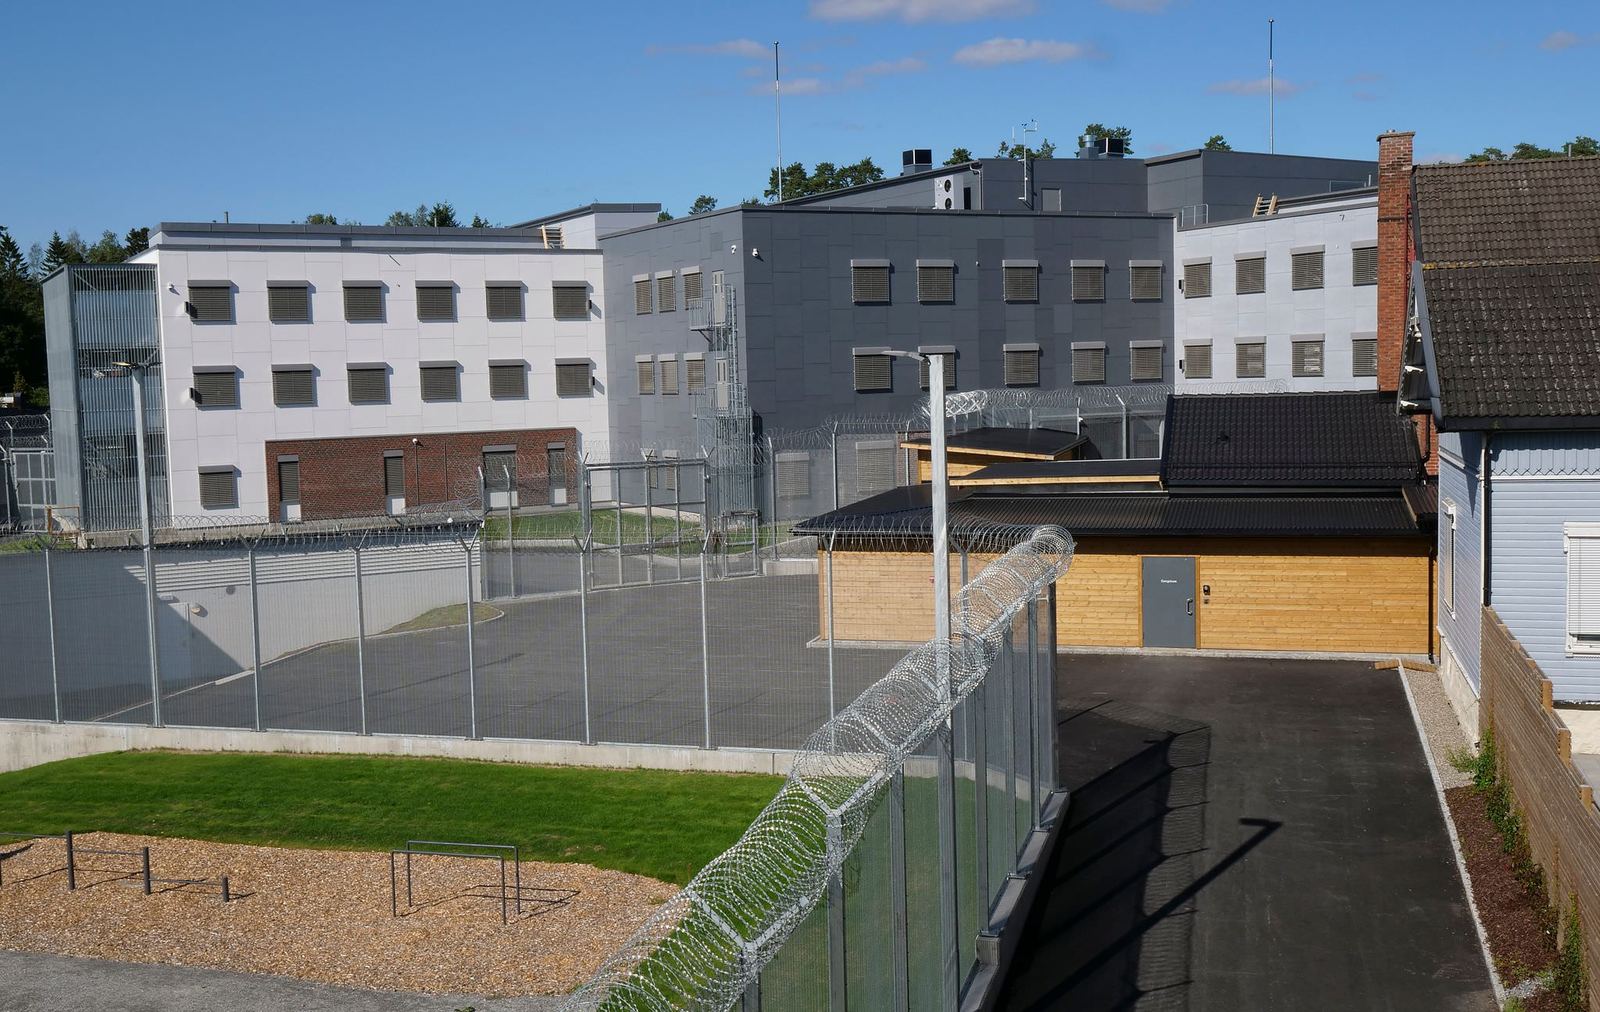 Тюрьма в норвегии реальность колония